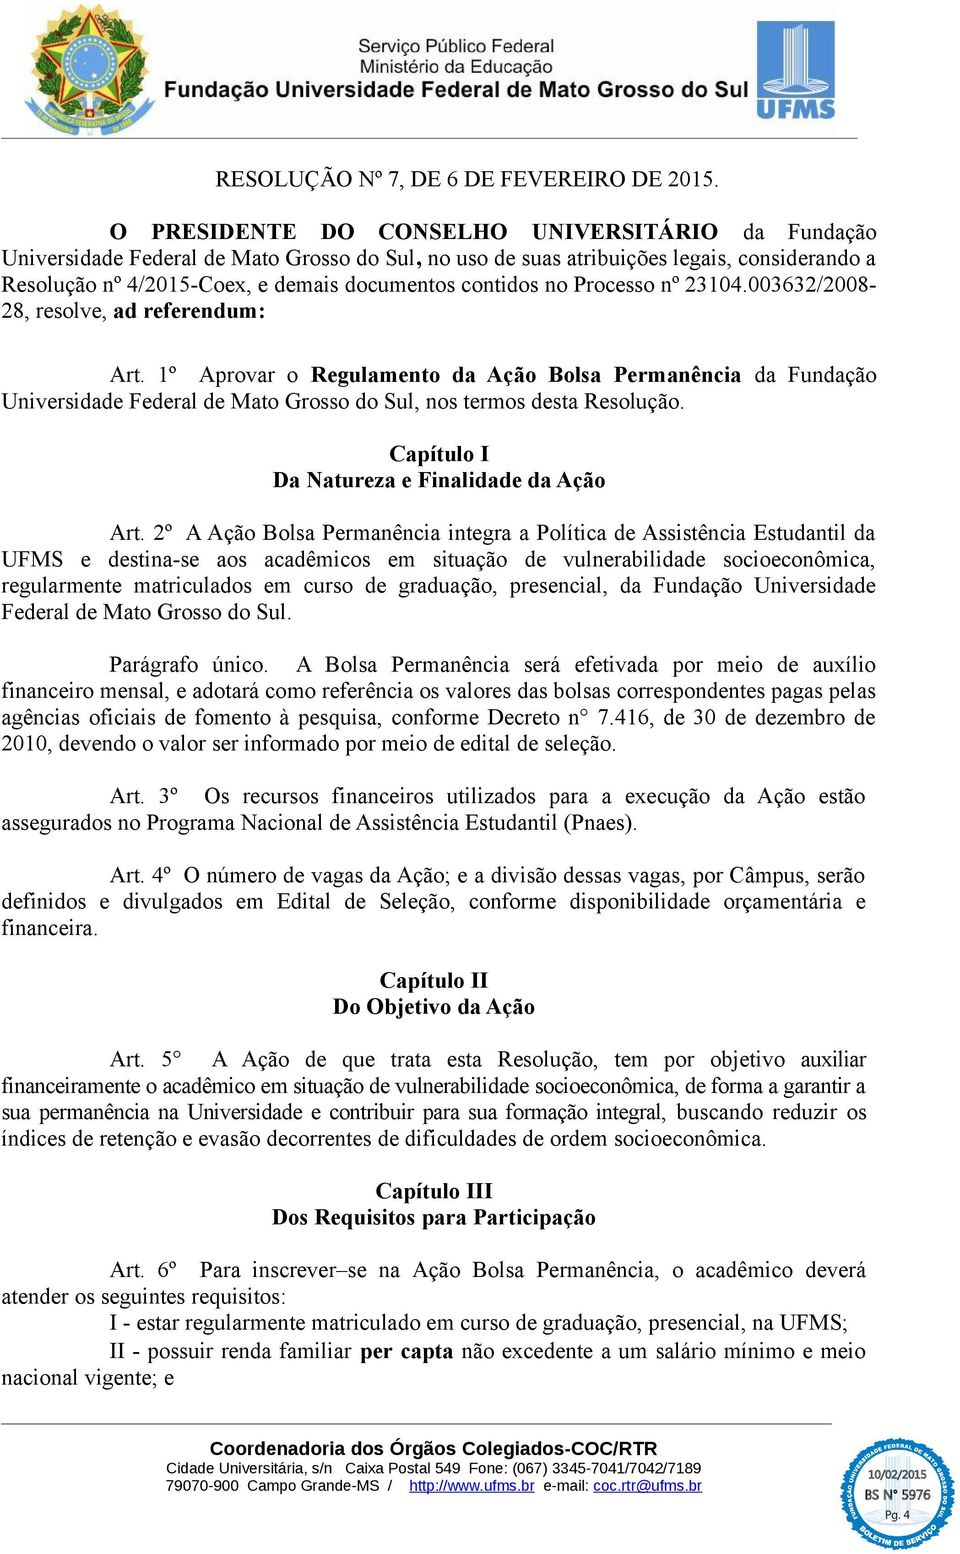 no Processo nº 23104.003632/2008-28, resolve, ad referendum: Art. 1º Aprovar o Regulamento da Ação Bolsa Permanência da Fundação Universidade Federal de Mato Grosso do Sul, nos termos desta Resolução.